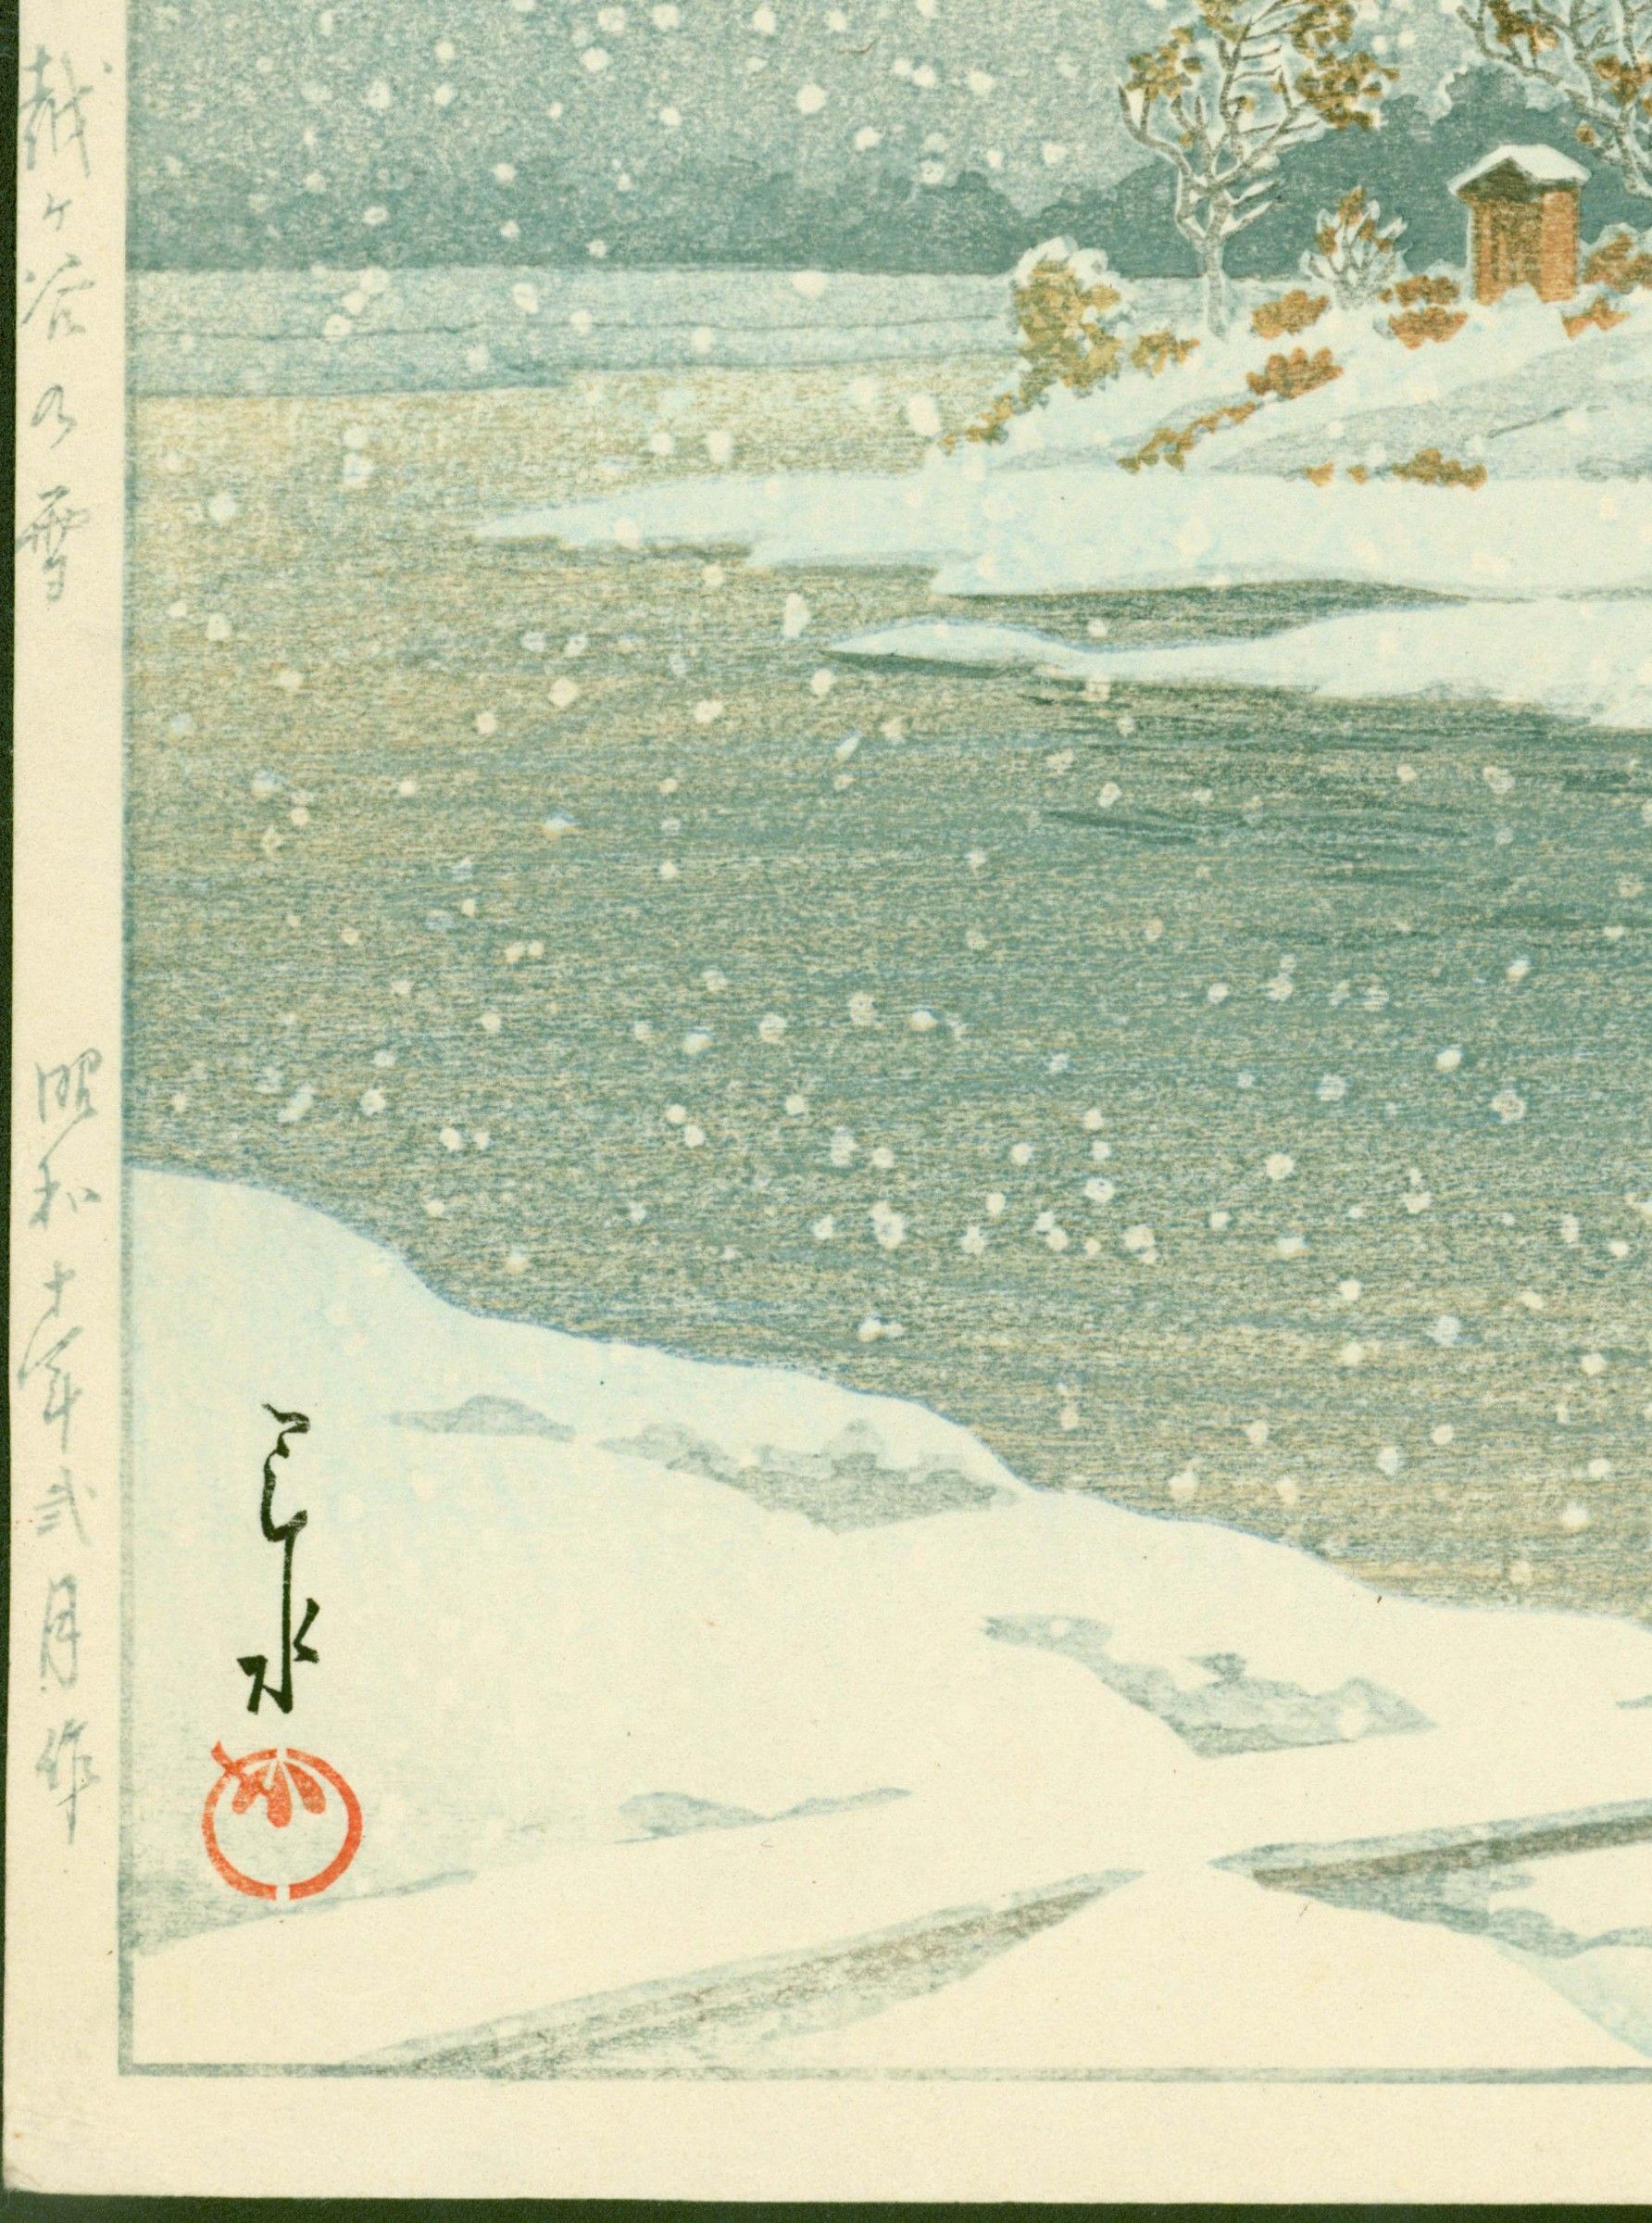 Kawase Hasui Woodblock Print - Snow at Koshigaya - 1st ed. SOLD